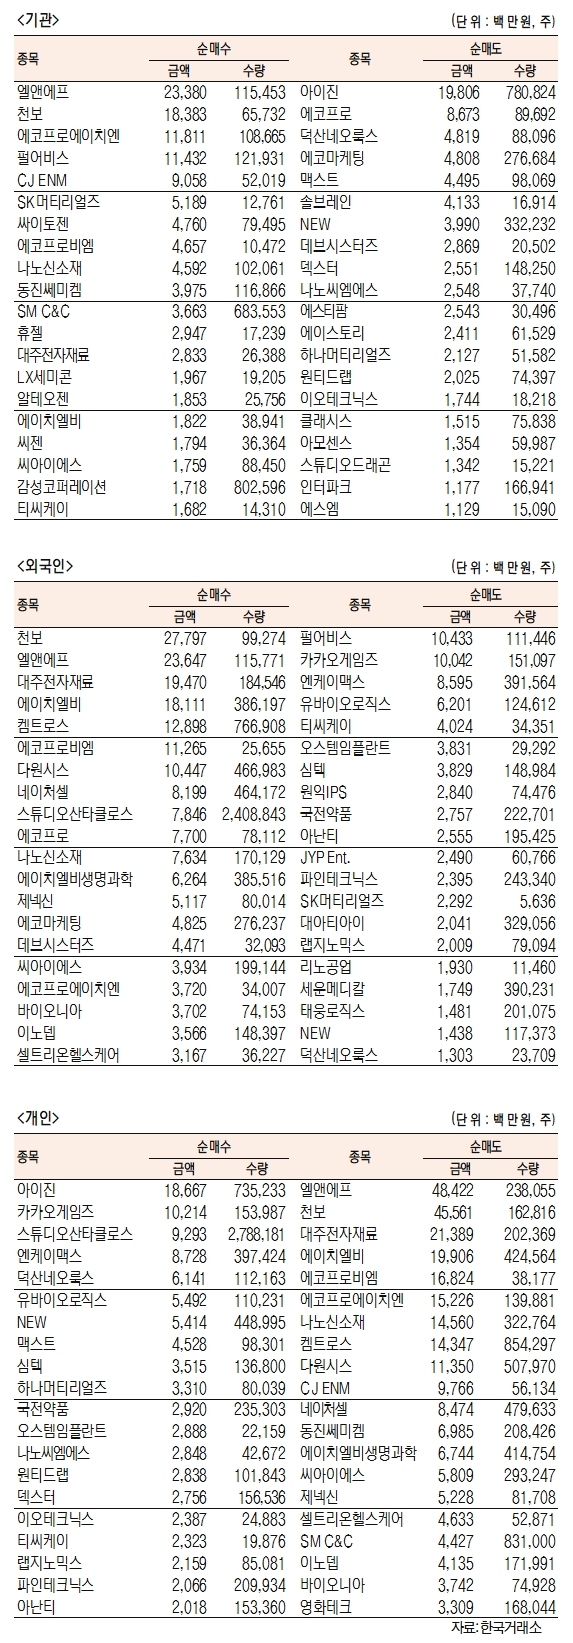 [표]코스닥 기관·외국인·개인 순매수·도 상위종목(10월 13일-최종치)